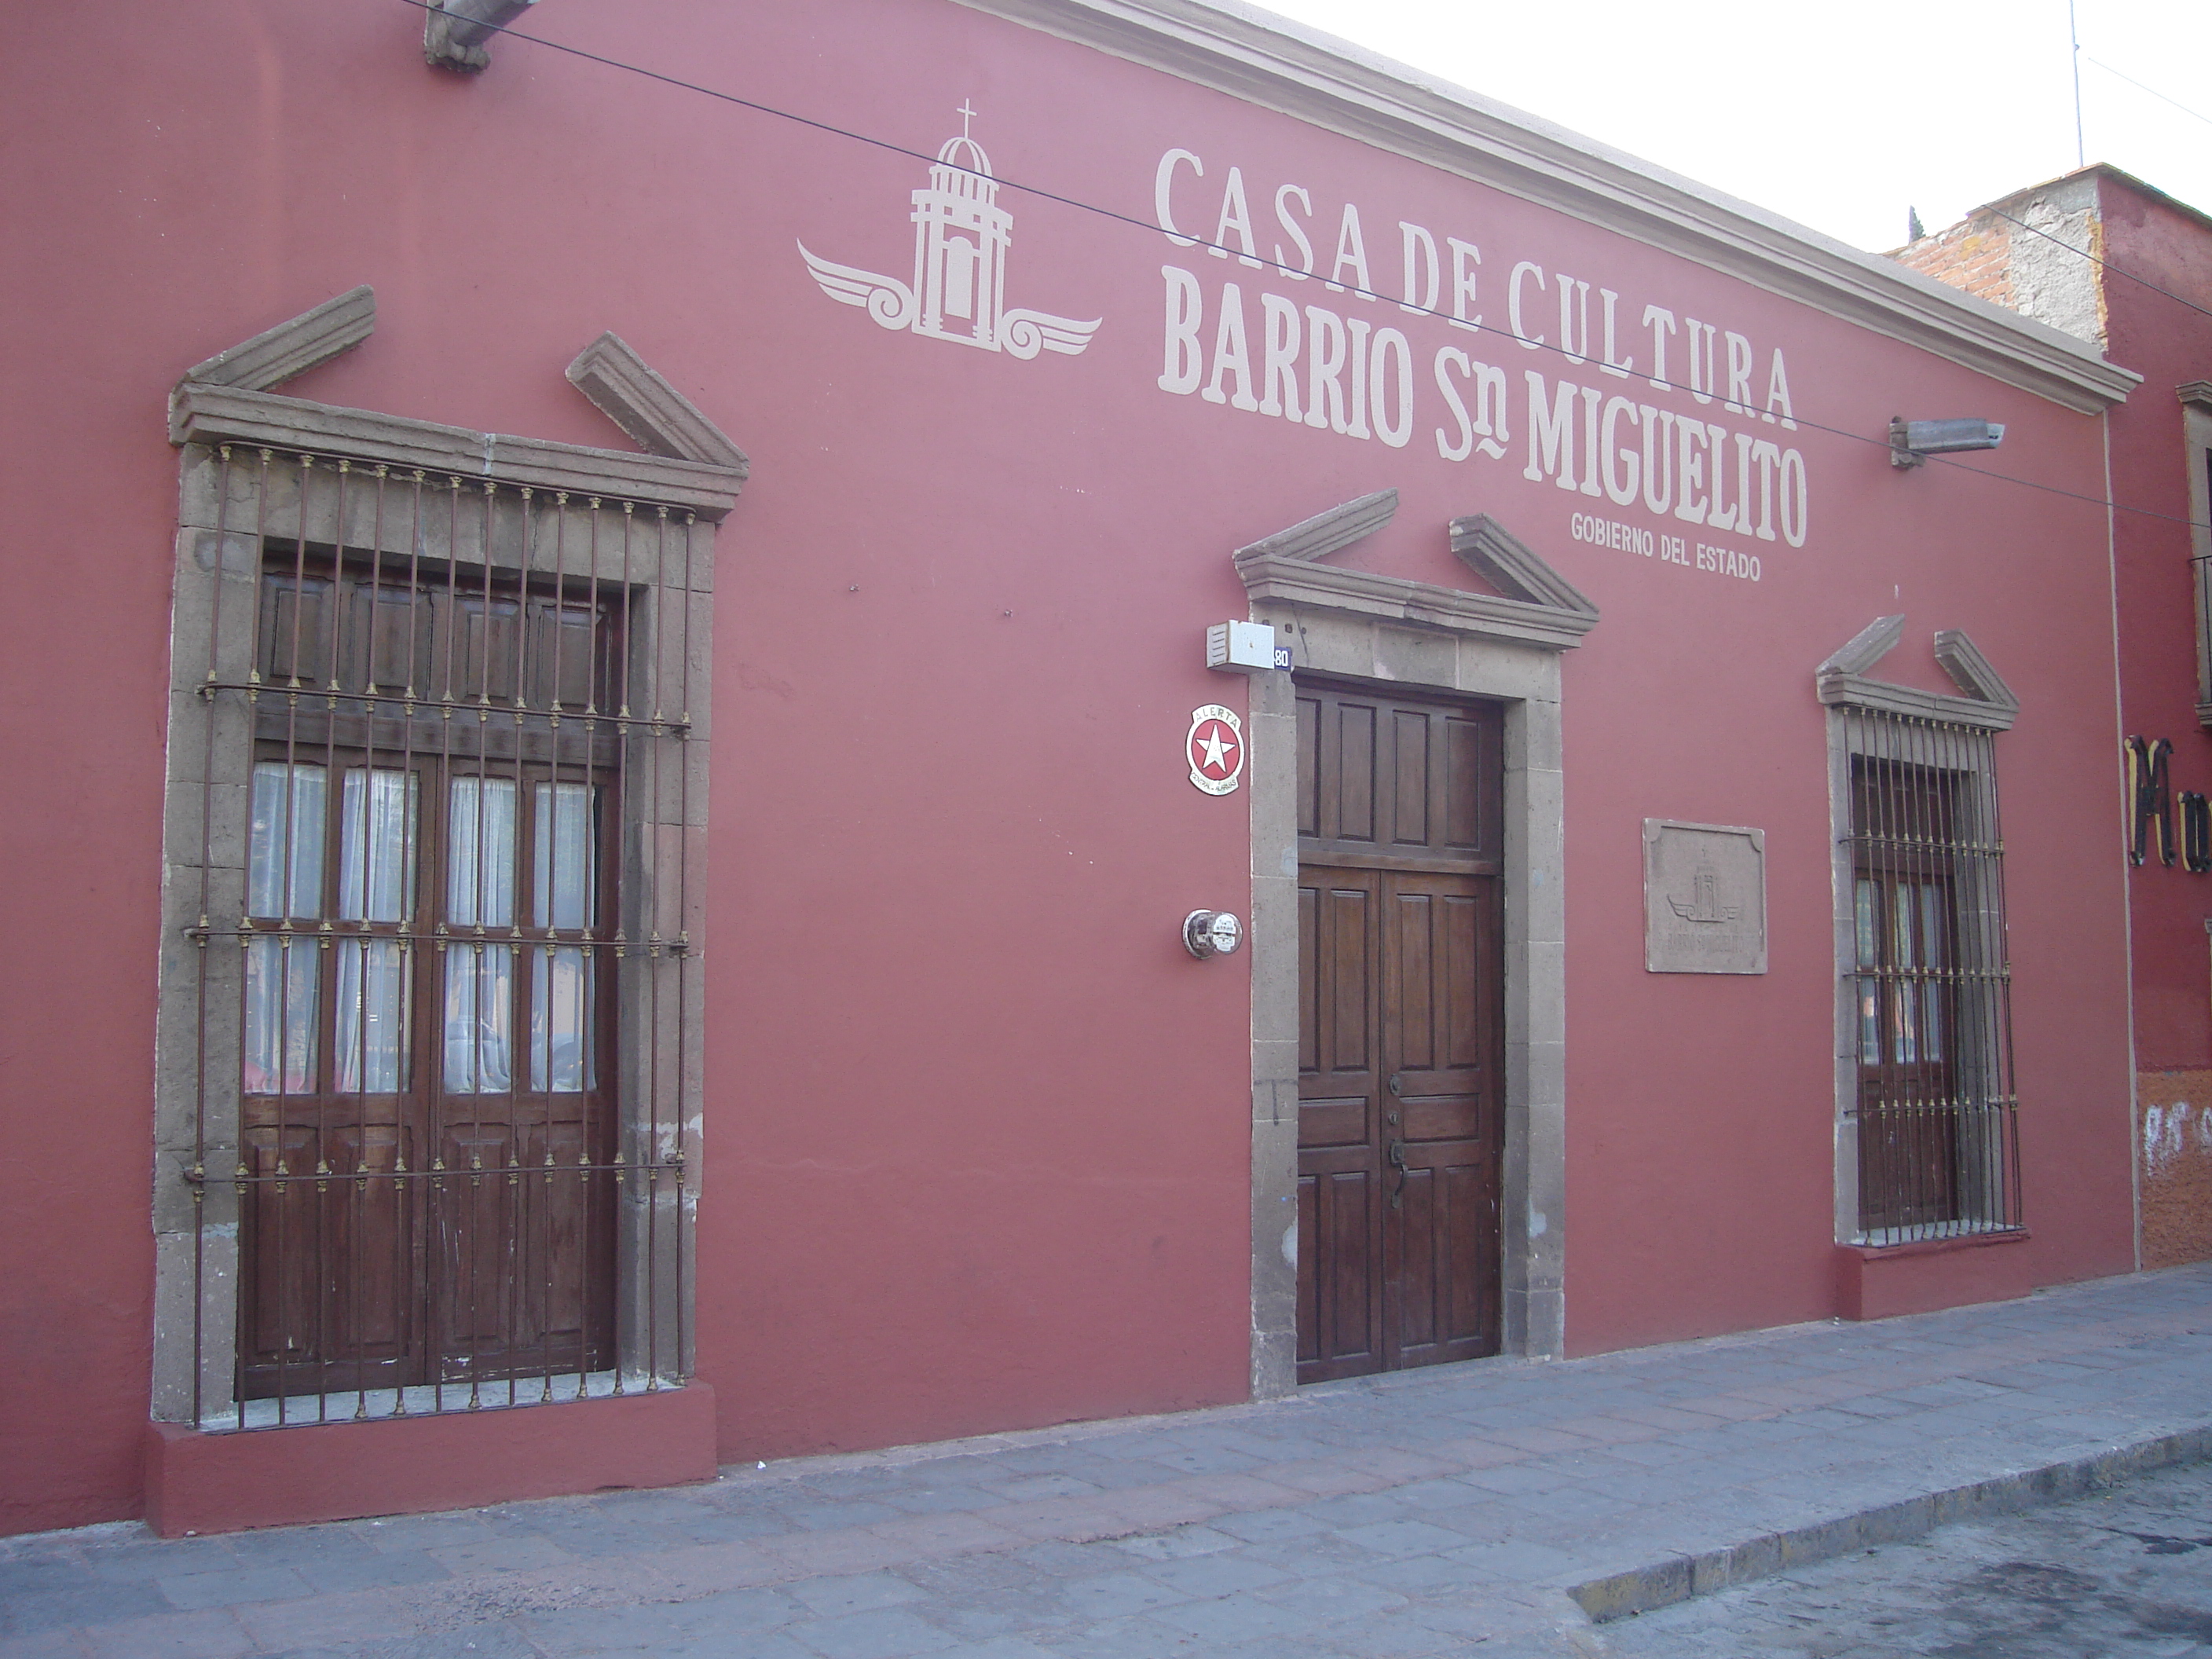 Casa de Cultura del Barrio de San Miguelito : Casas y centros